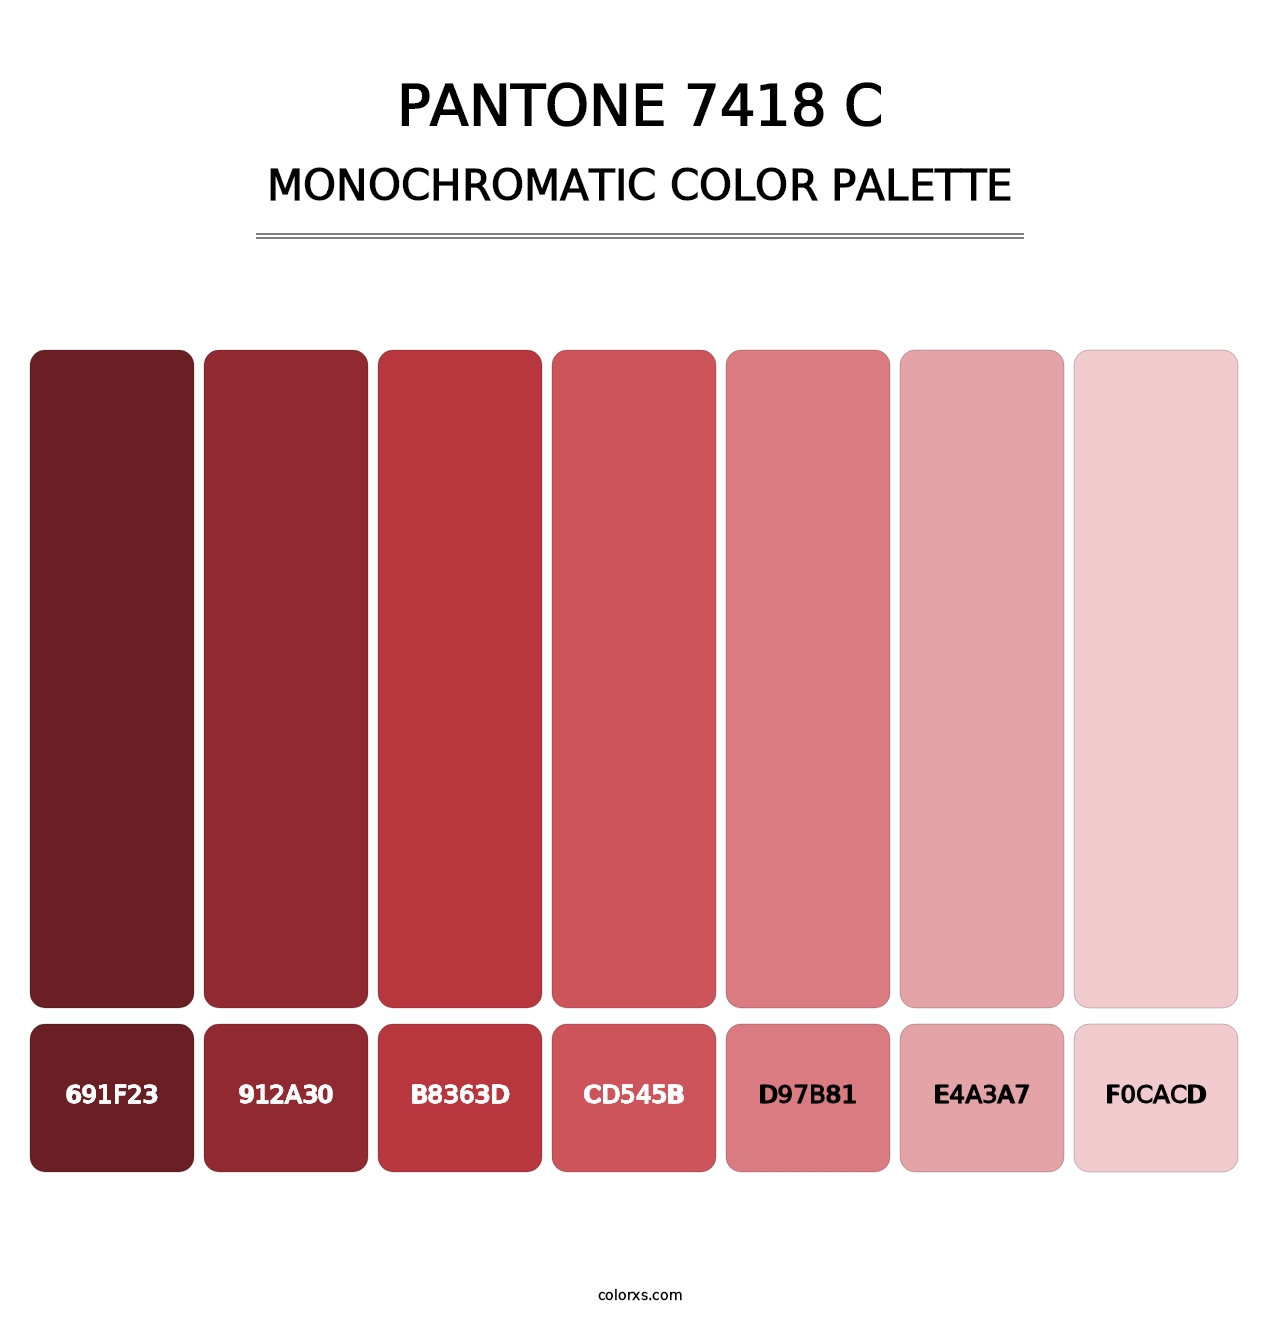 PANTONE 7418 C - Monochromatic Color Palette